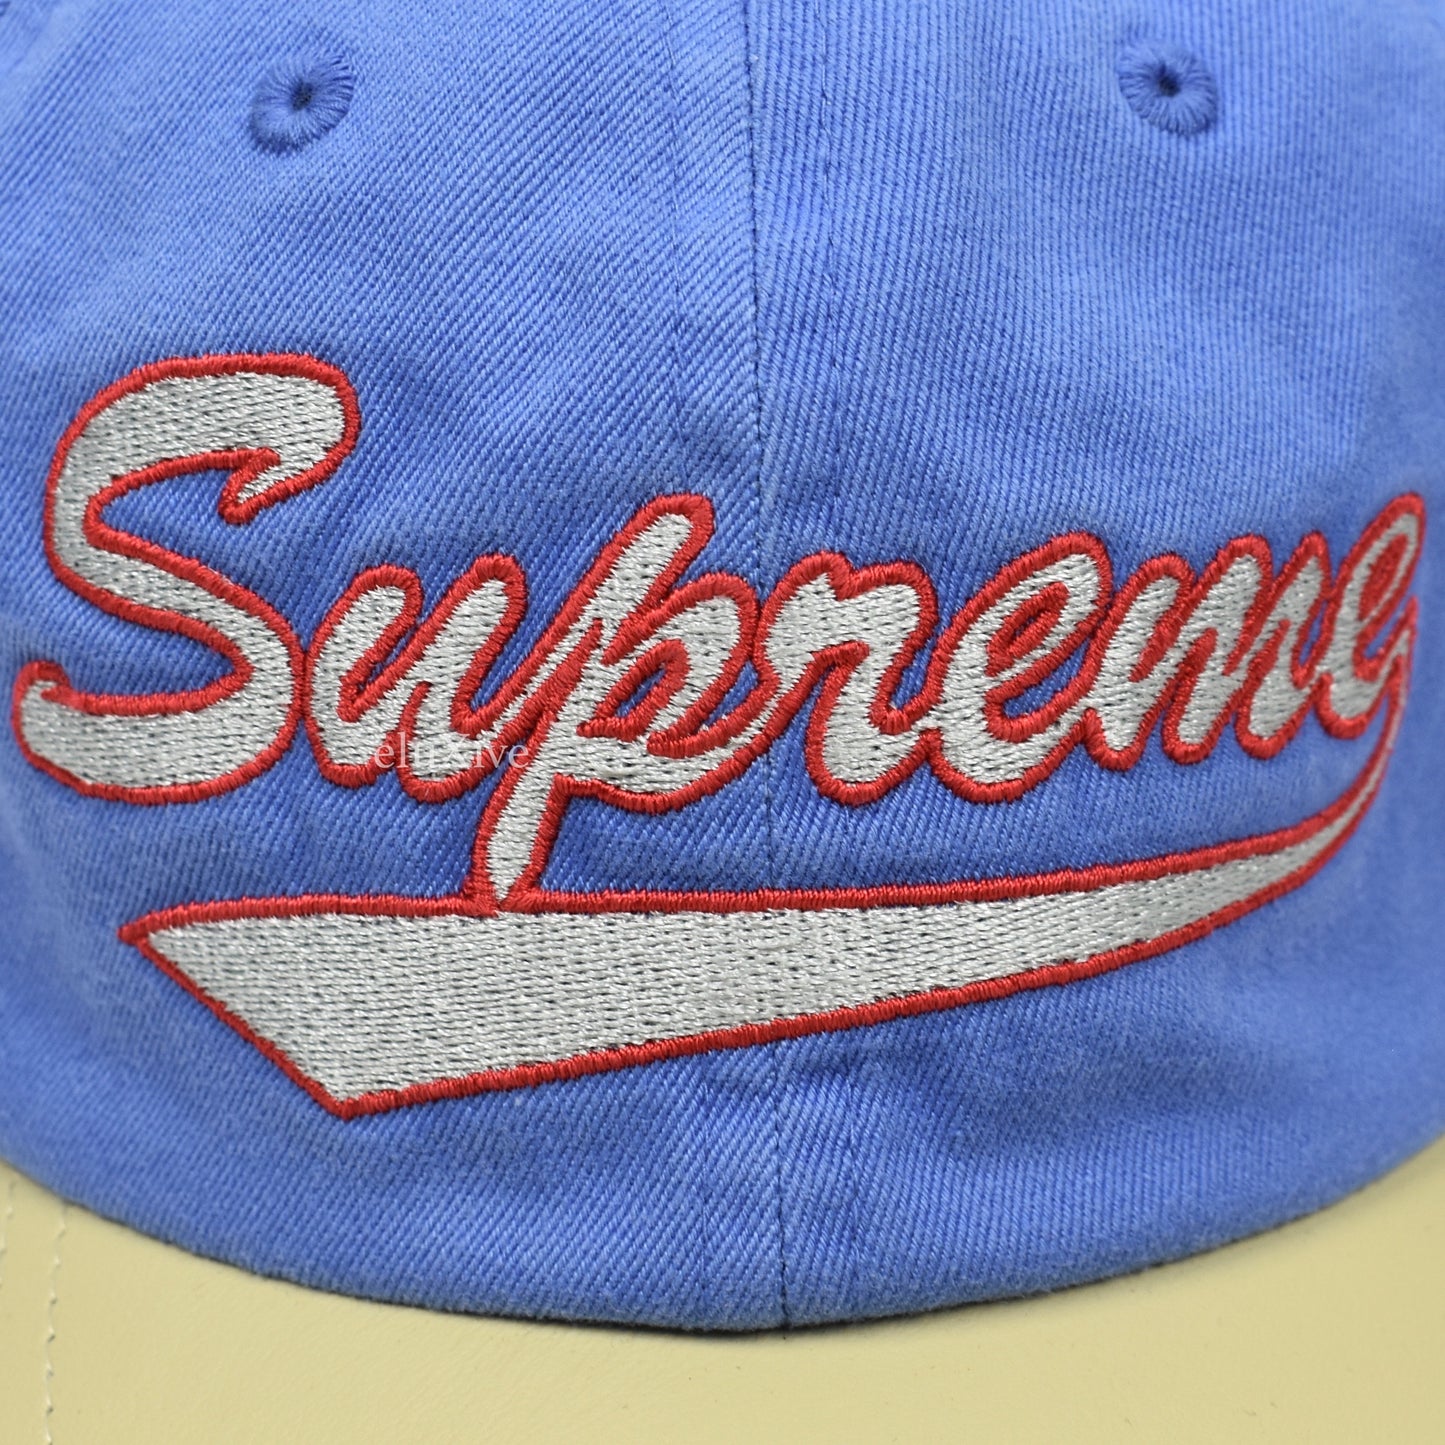 Supreme - Leather Visor 6-Panel Hat (Light Blue)